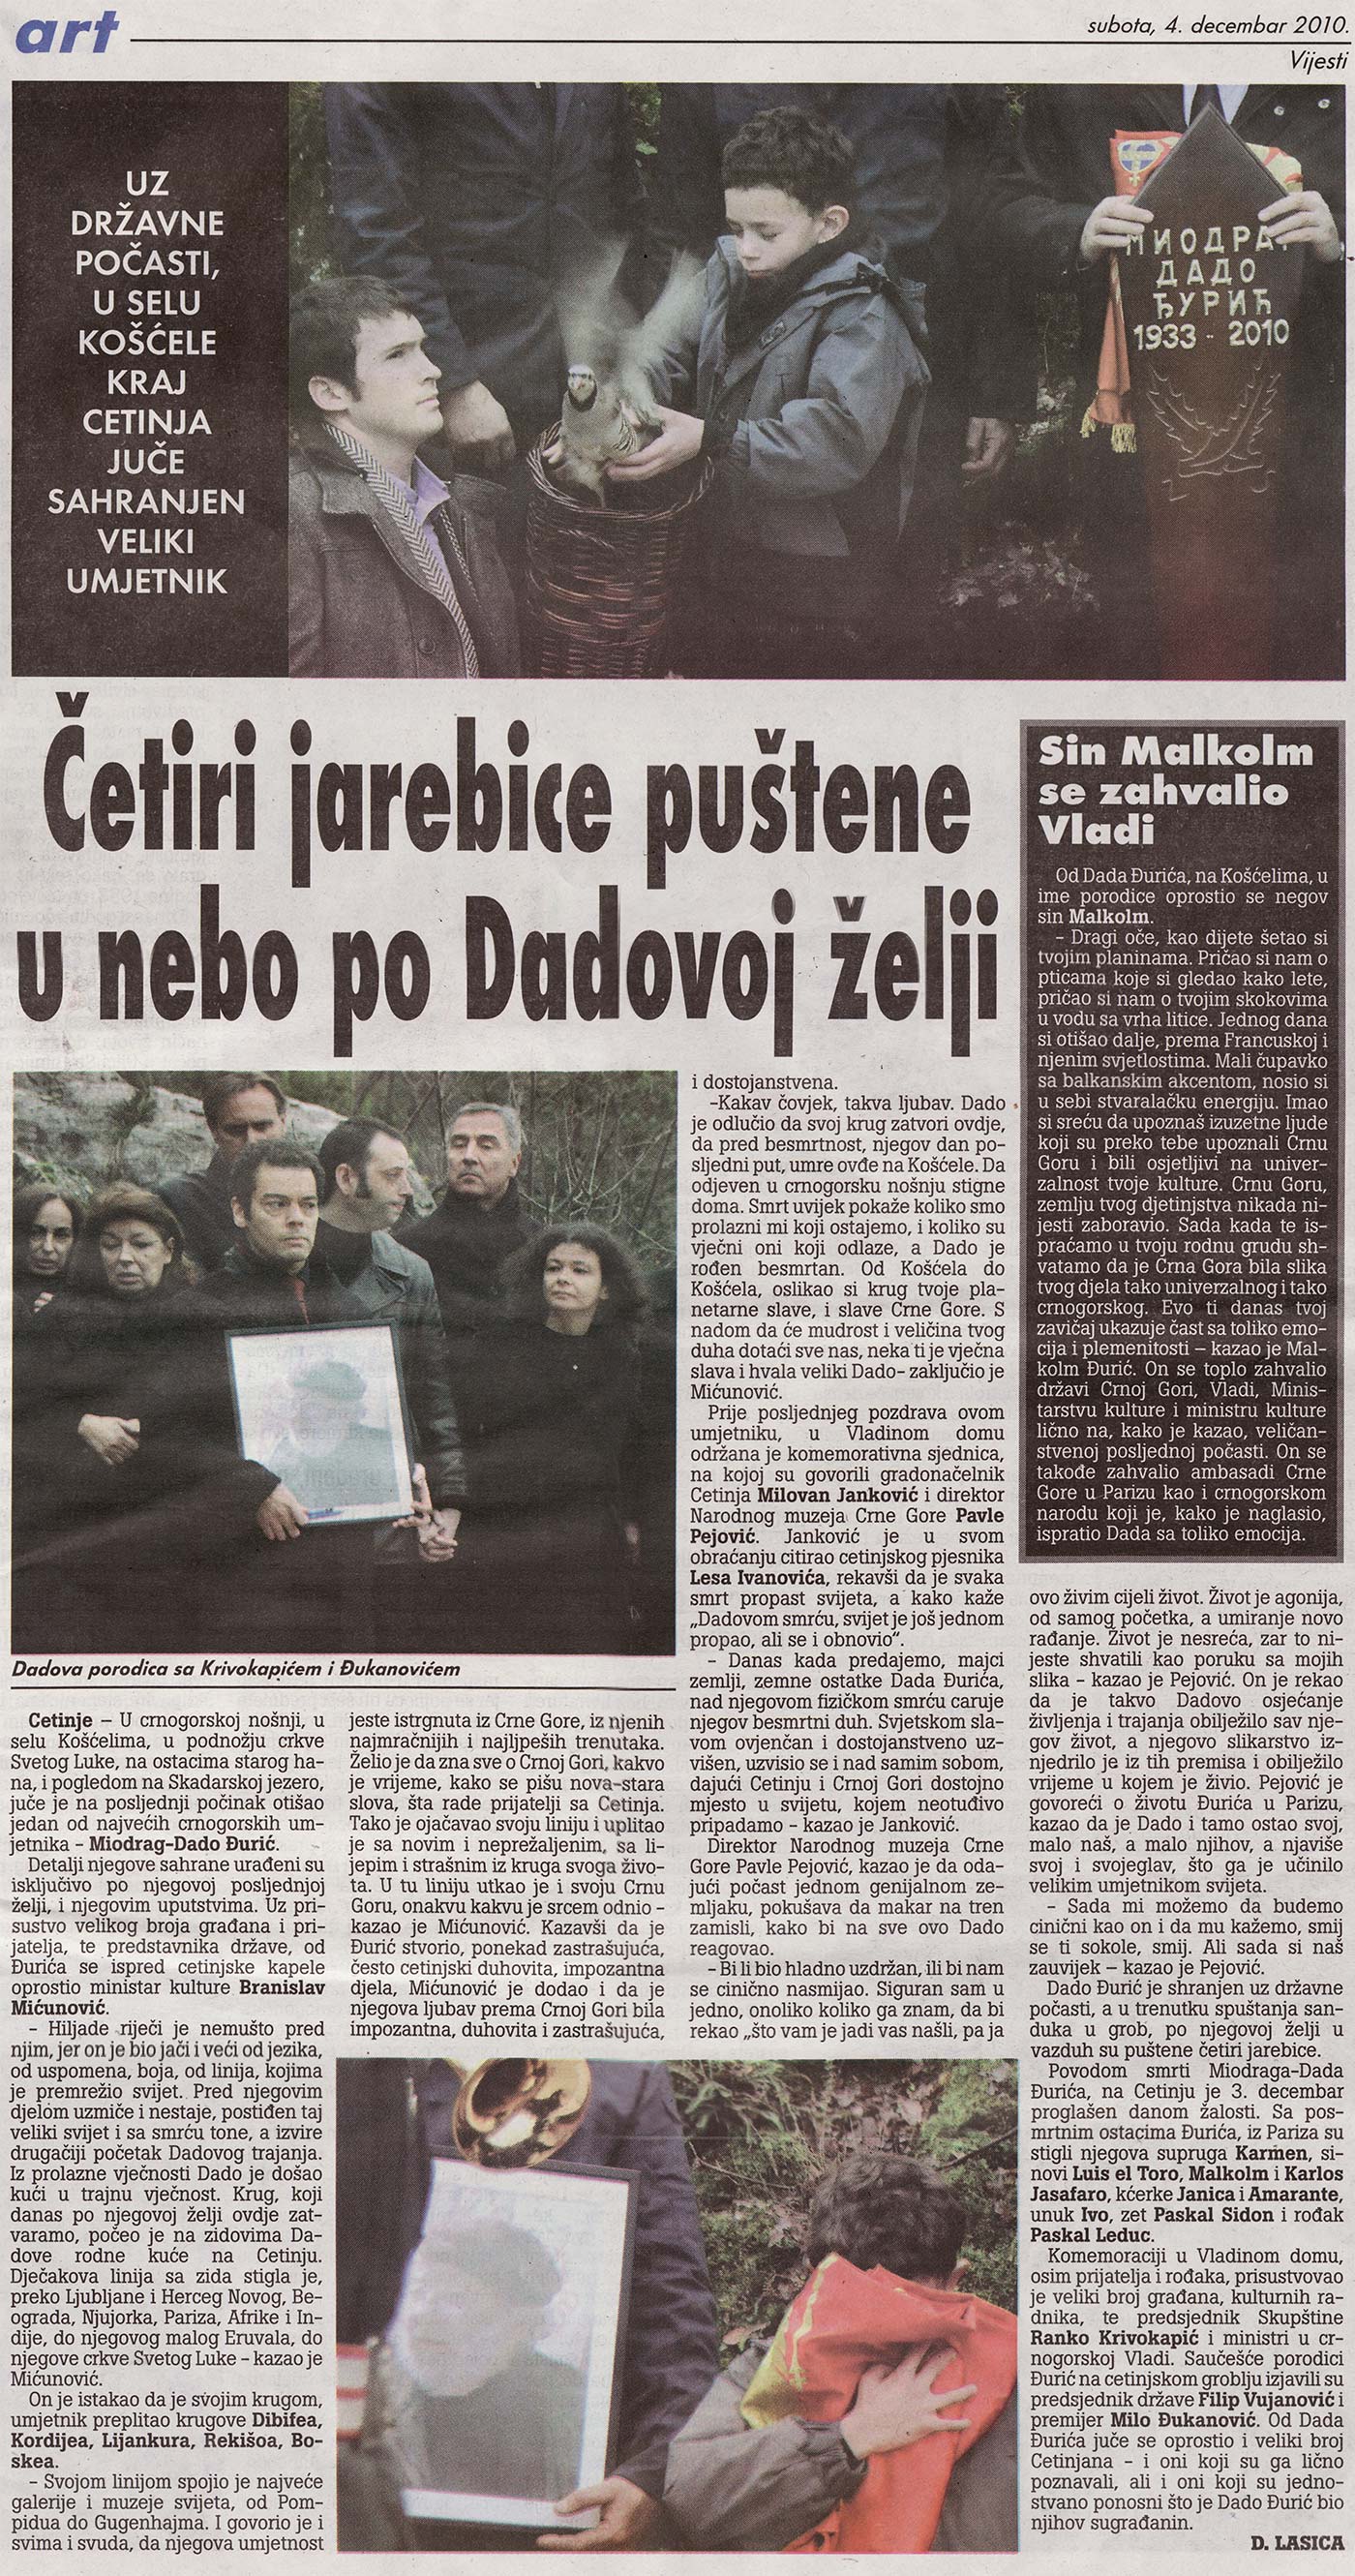 Dnevni list Vijesti od 04. decembra 2010. godine.